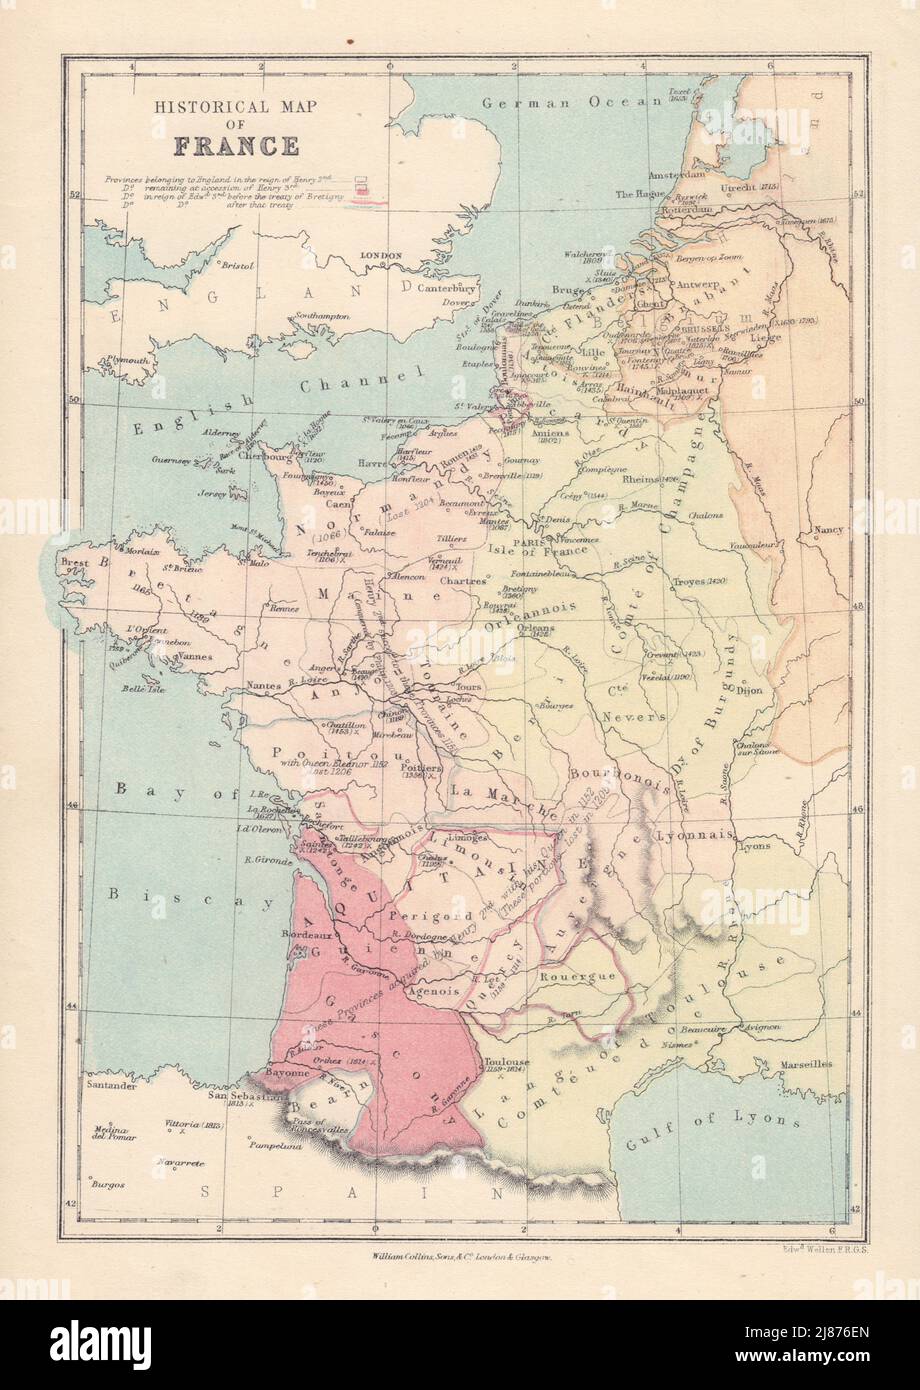 TERRITORIO INGLESE IN FRANCIA. Battaglie/date chiave. Data di perdita del terreno. MAPPA COLLINS 1873 Foto Stock